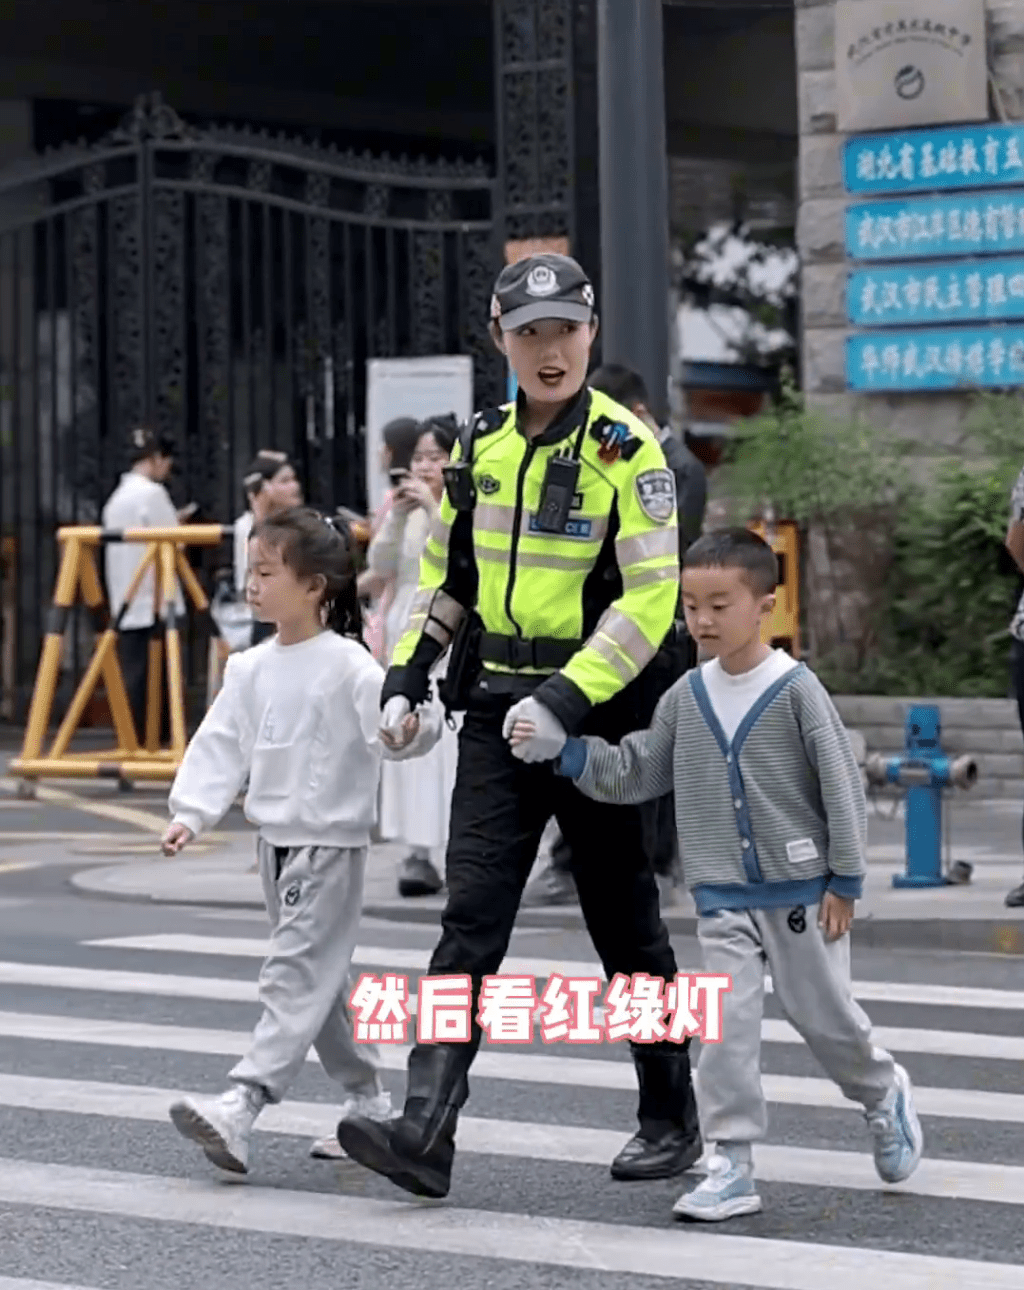 武汉警花温柔教导小朋友过马路。